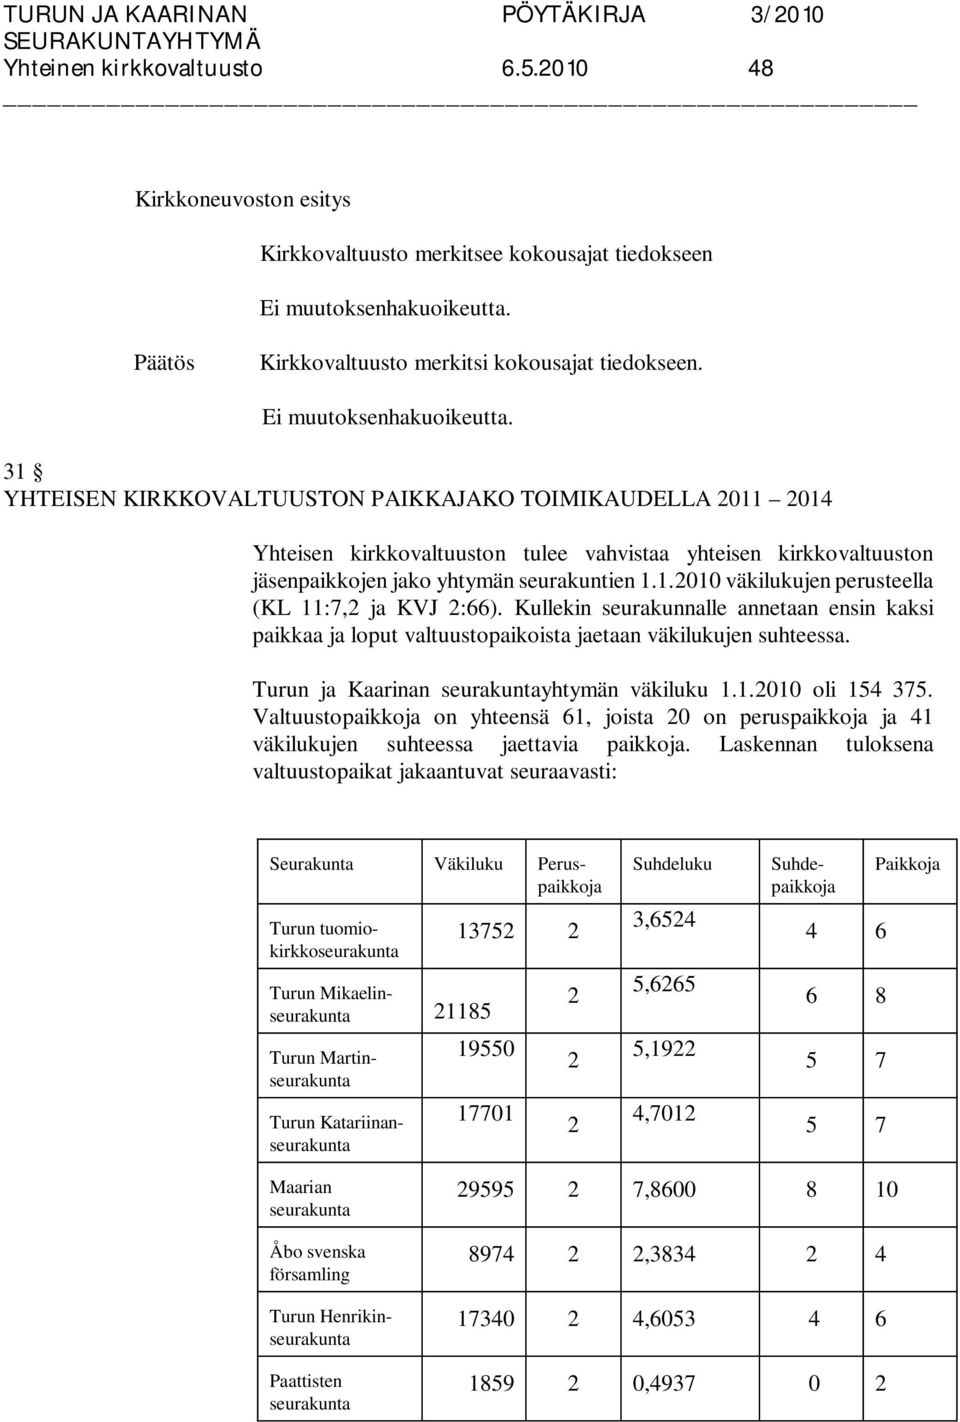 Kullekin seurakunnalle annetaan ensin kaksi paikkaa ja loput valtuustopaikoista jaetaan väkilukujen suhteessa. Turun ja Kaarinan seurakuntayhtymän väkiluku 1.1.2010 oli 154 375.